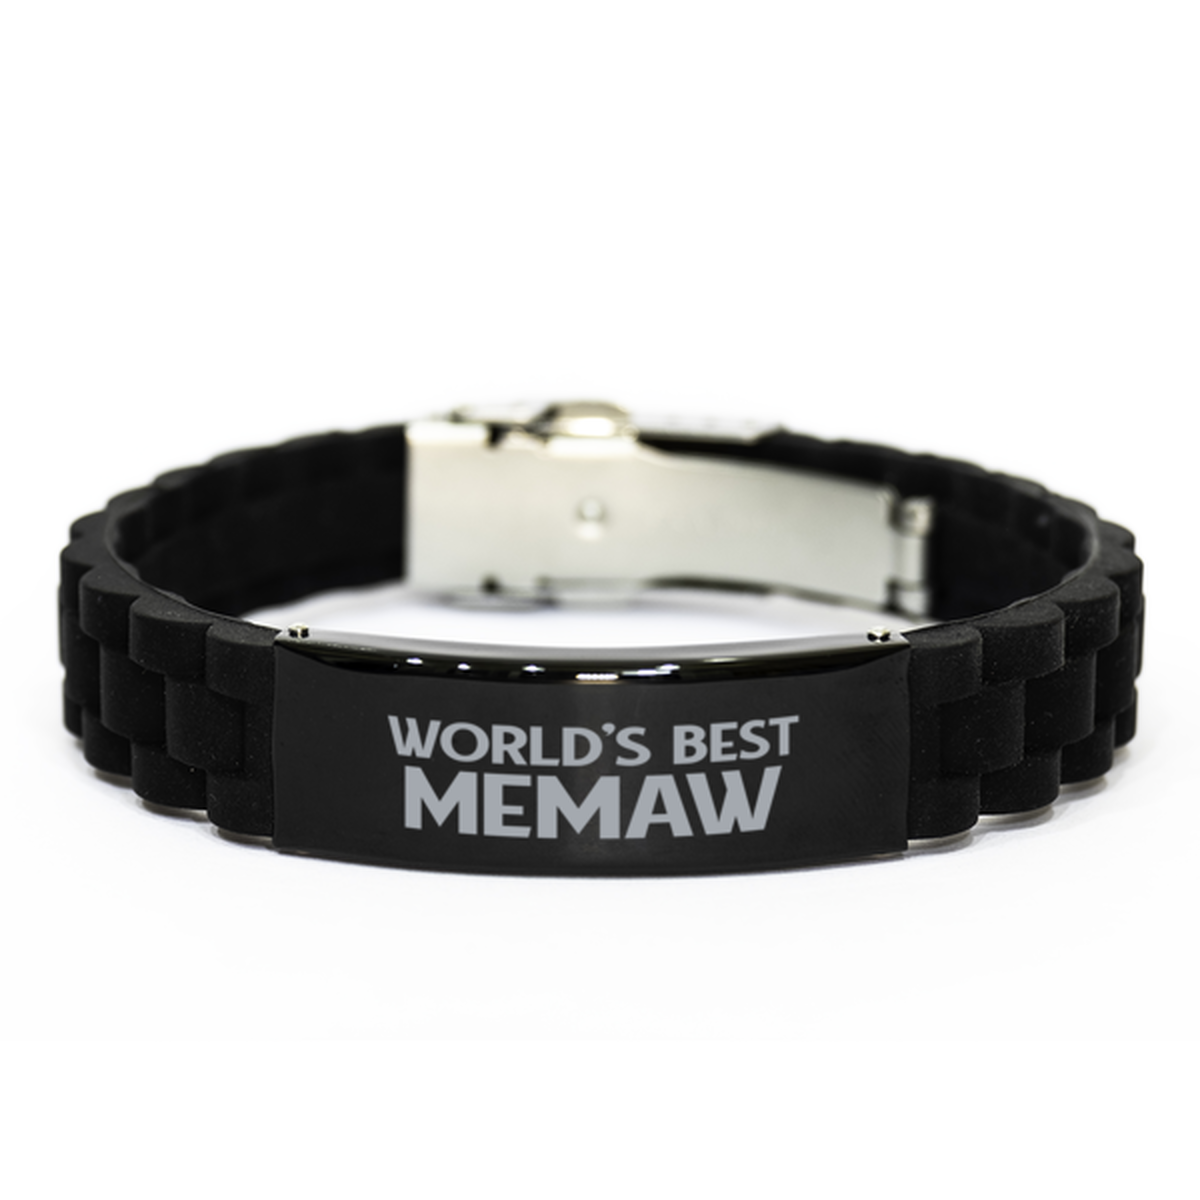 World's Best Memaw Gifts, Funny Black Engraved Bracelet For Memaw, Family Gifts For Women